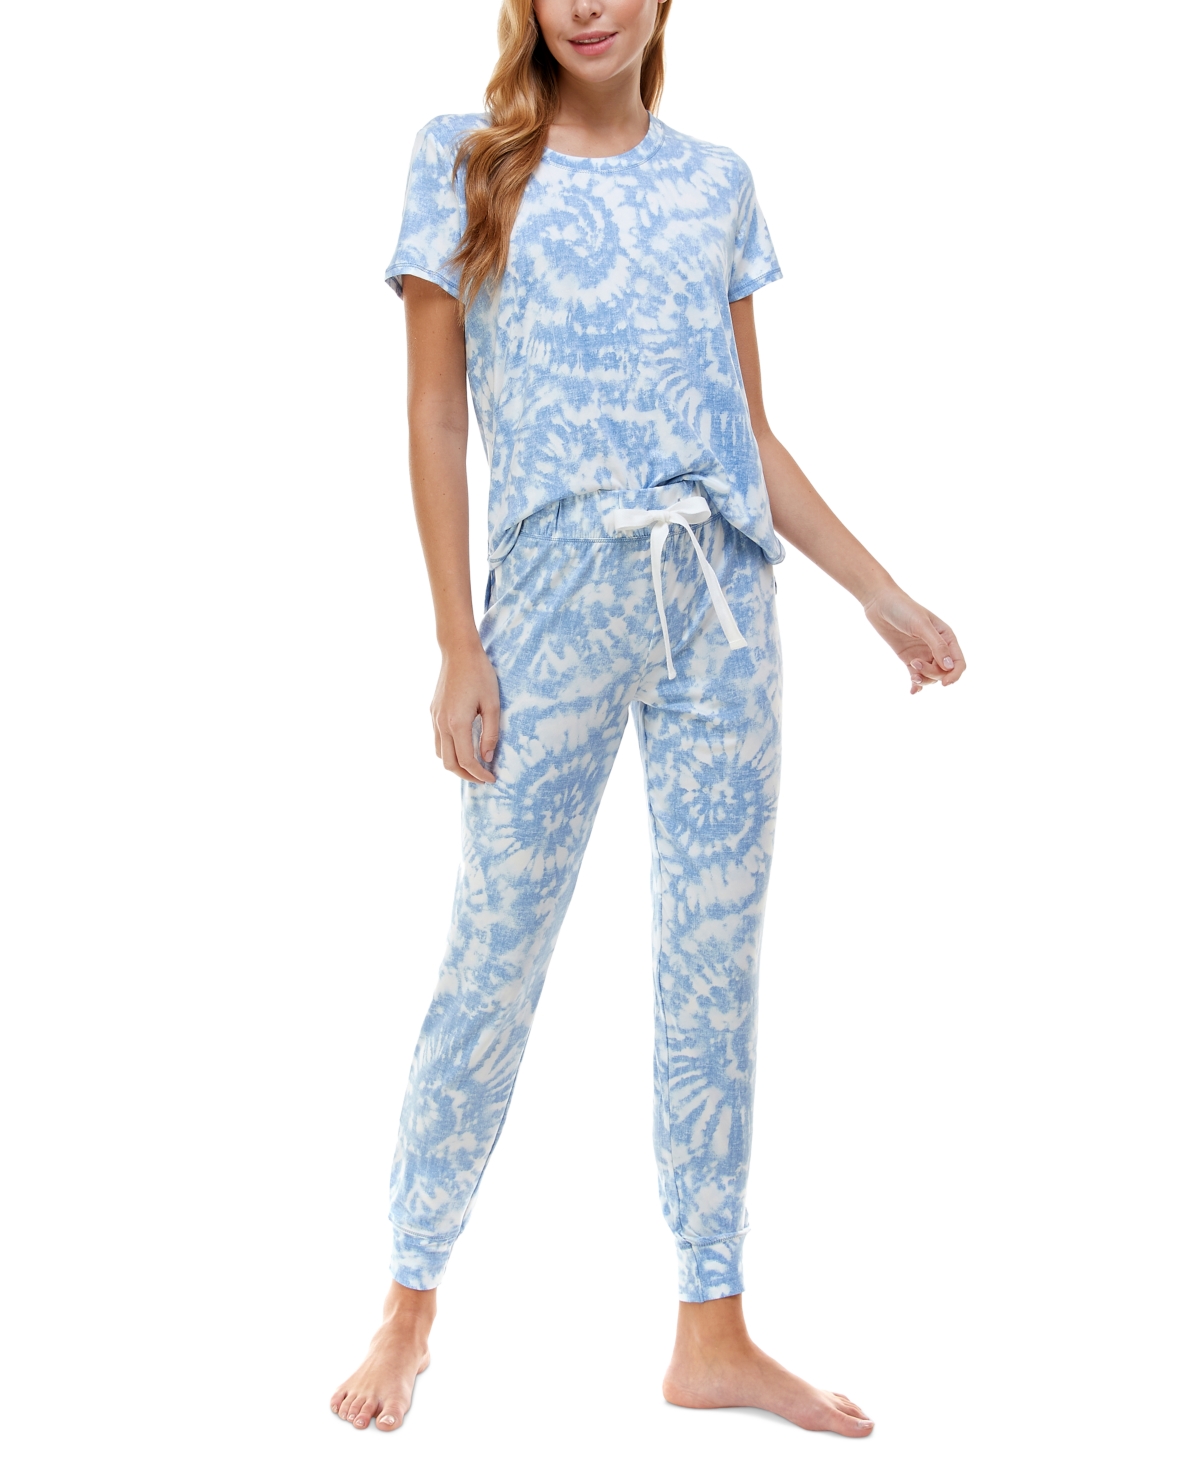 Roudelain Printed Short Sleeve Top & Jogger Pajama Set In Banshee Tie Dye